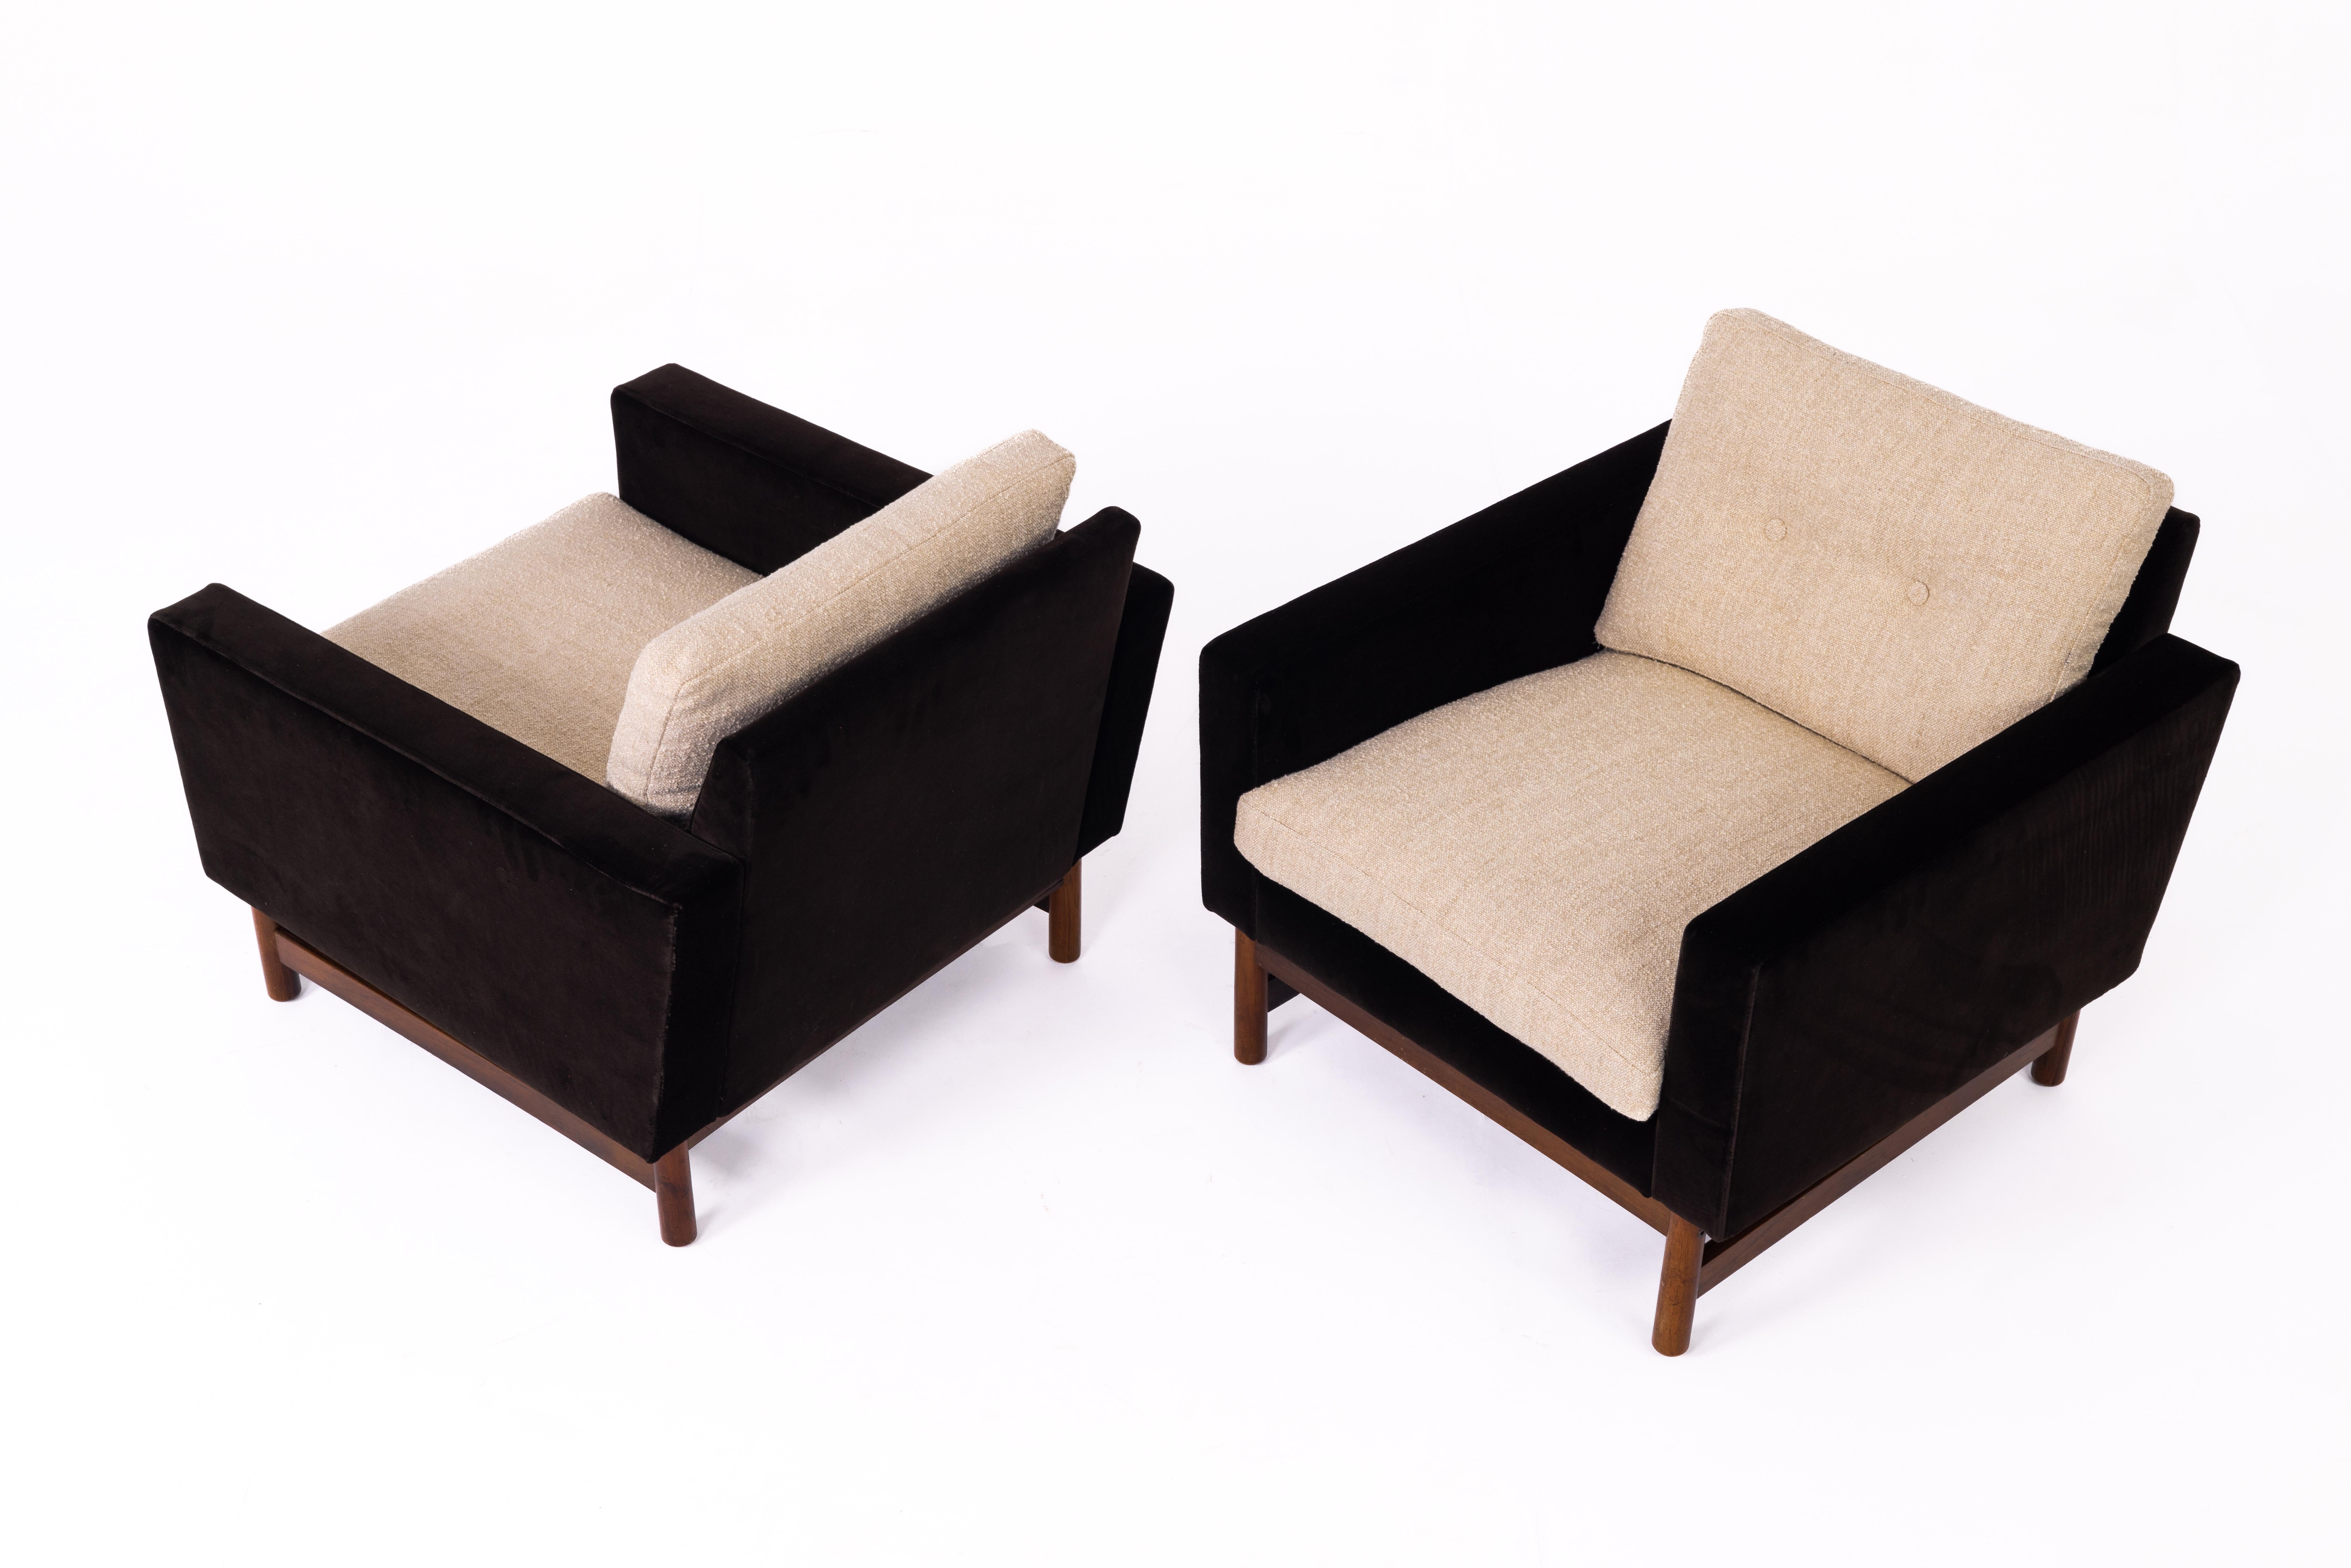 Paar schwedische Sessel, 1960er Jahre, vollständig restauriert und neu gepolstert mit dunkelbraunem Dedar-Samt (Adamo&Eva), Kissen aus Boccette von Nobilis (Stella), Beine aus Palisanderholz.